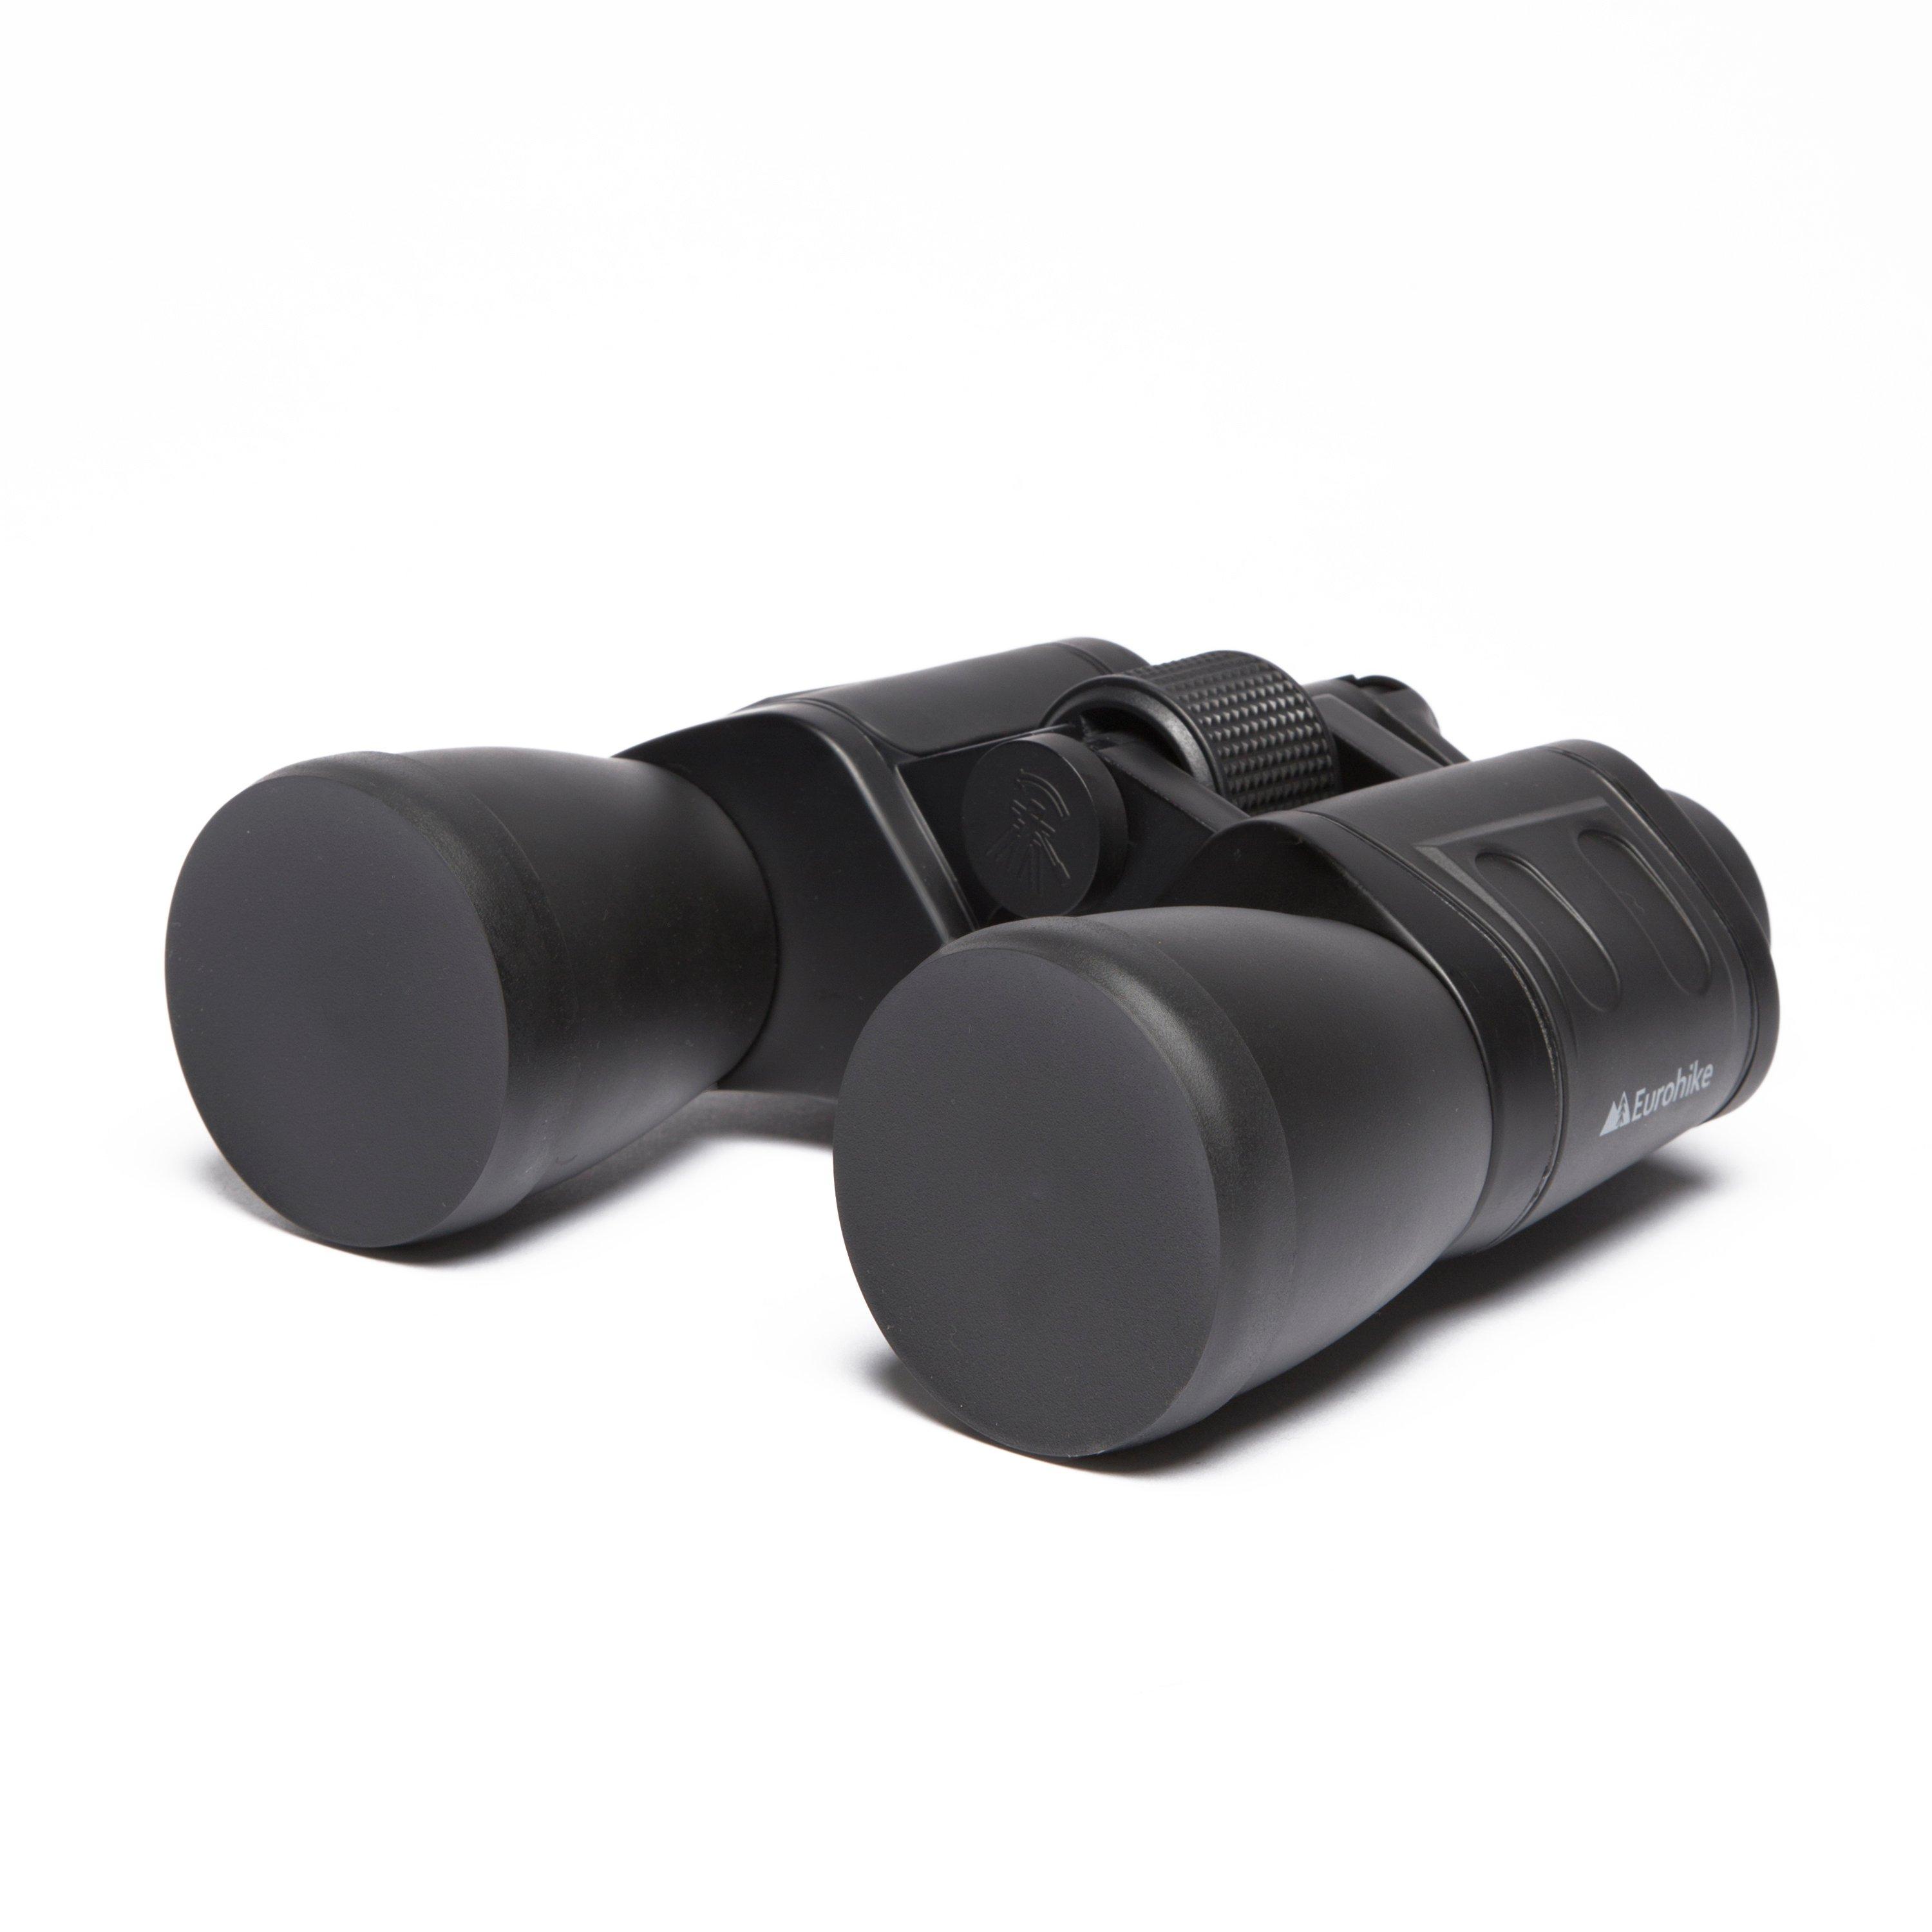 Eurohike 10X50 Binoculars Review